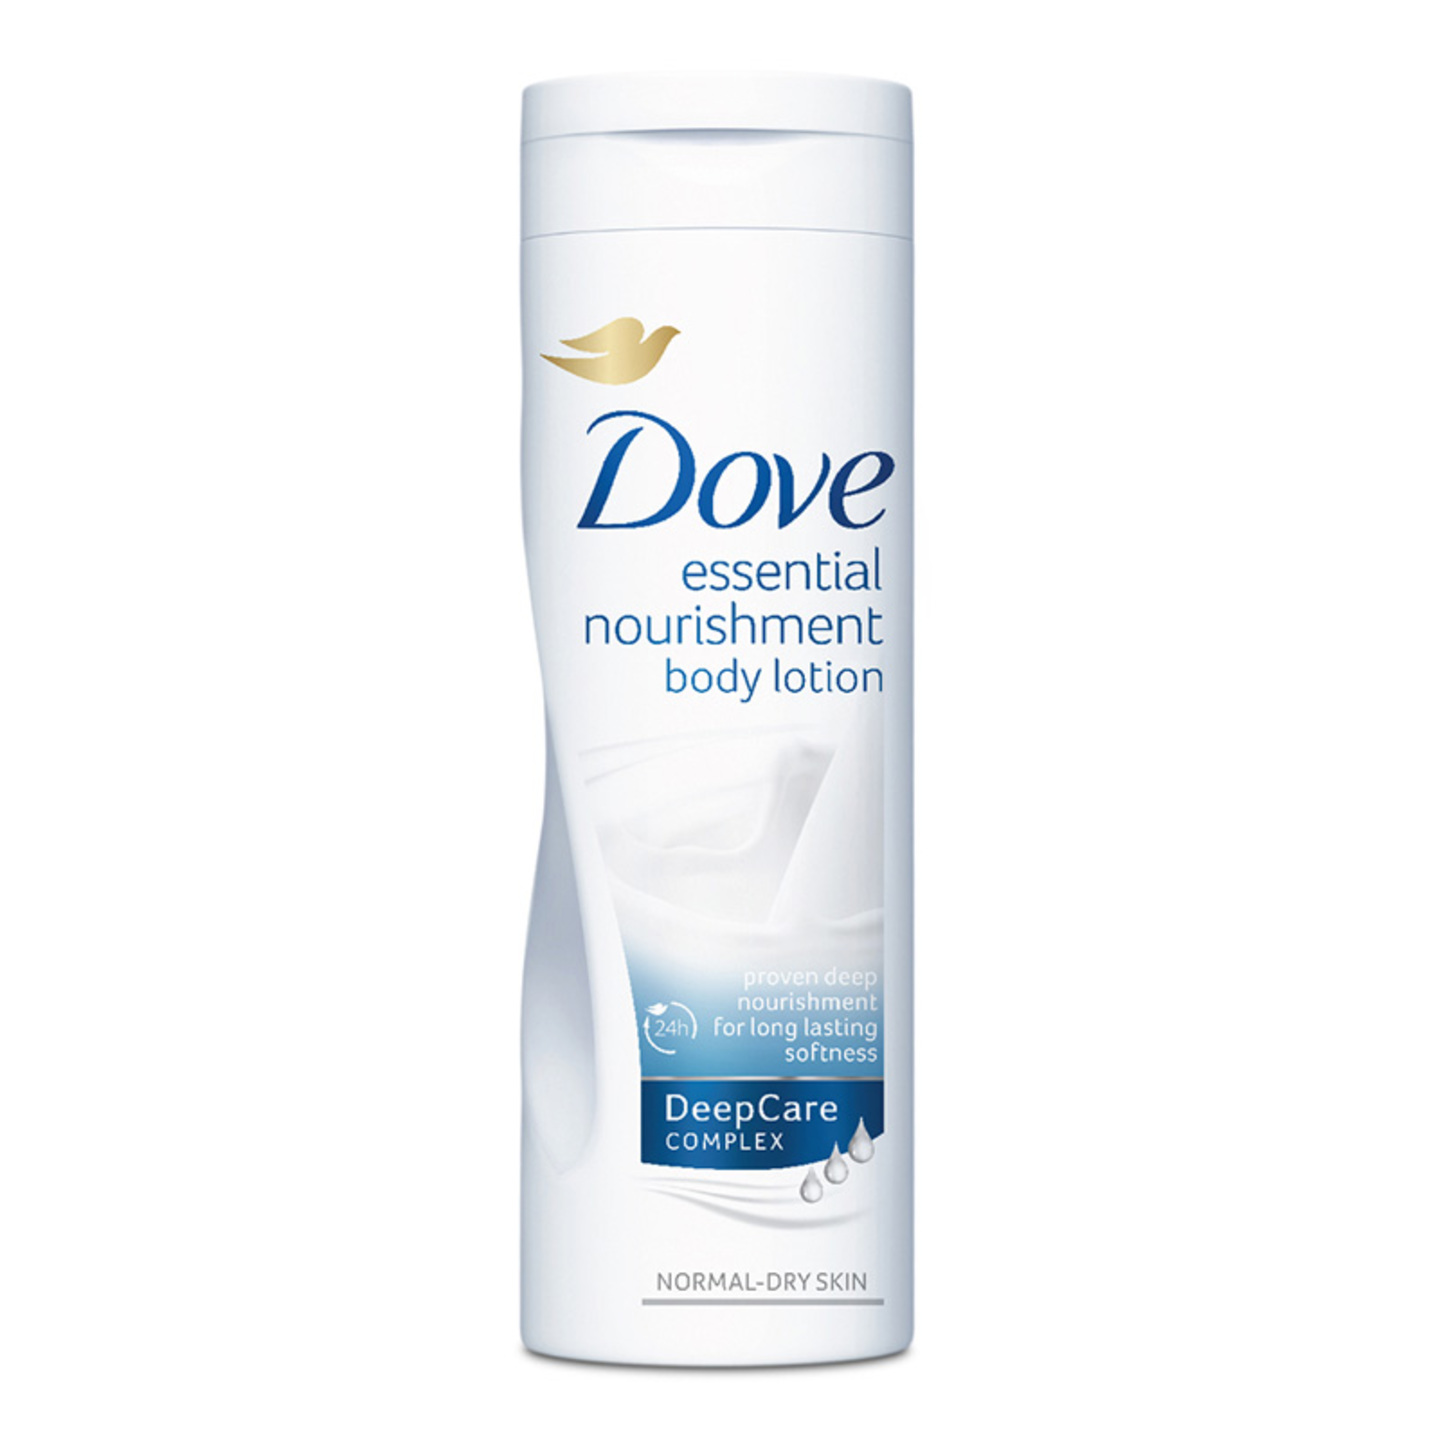 Dove body lotion essential nourishment 400ml